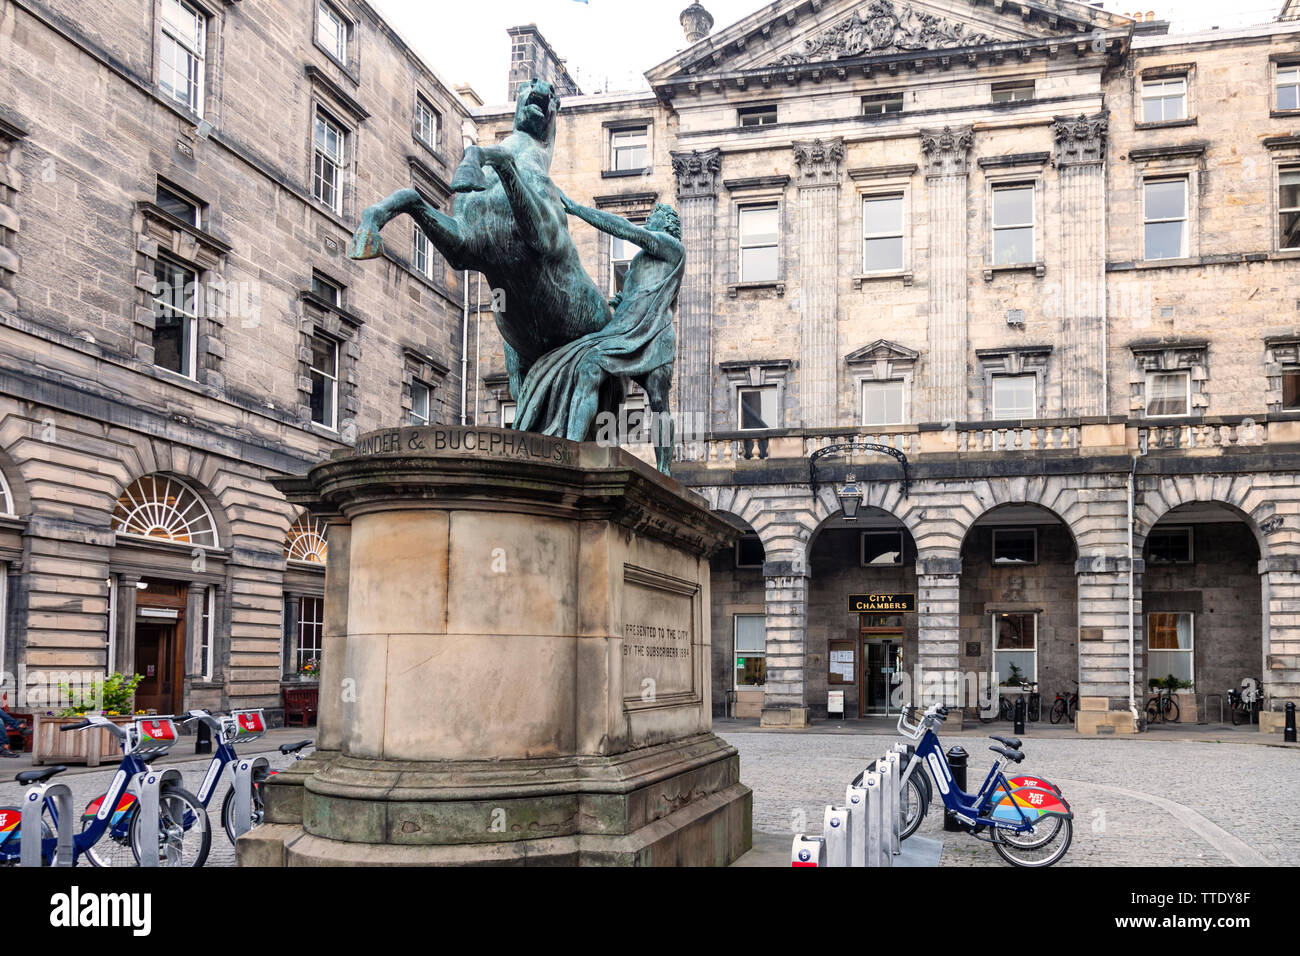 Die Statue (1884, Sir John Edelstahl) von Alexander zähmung Bucepalus im Viereck aus Edinburgh City Chambers, (1761, John Adam) an der Royal Mile. Stockfoto